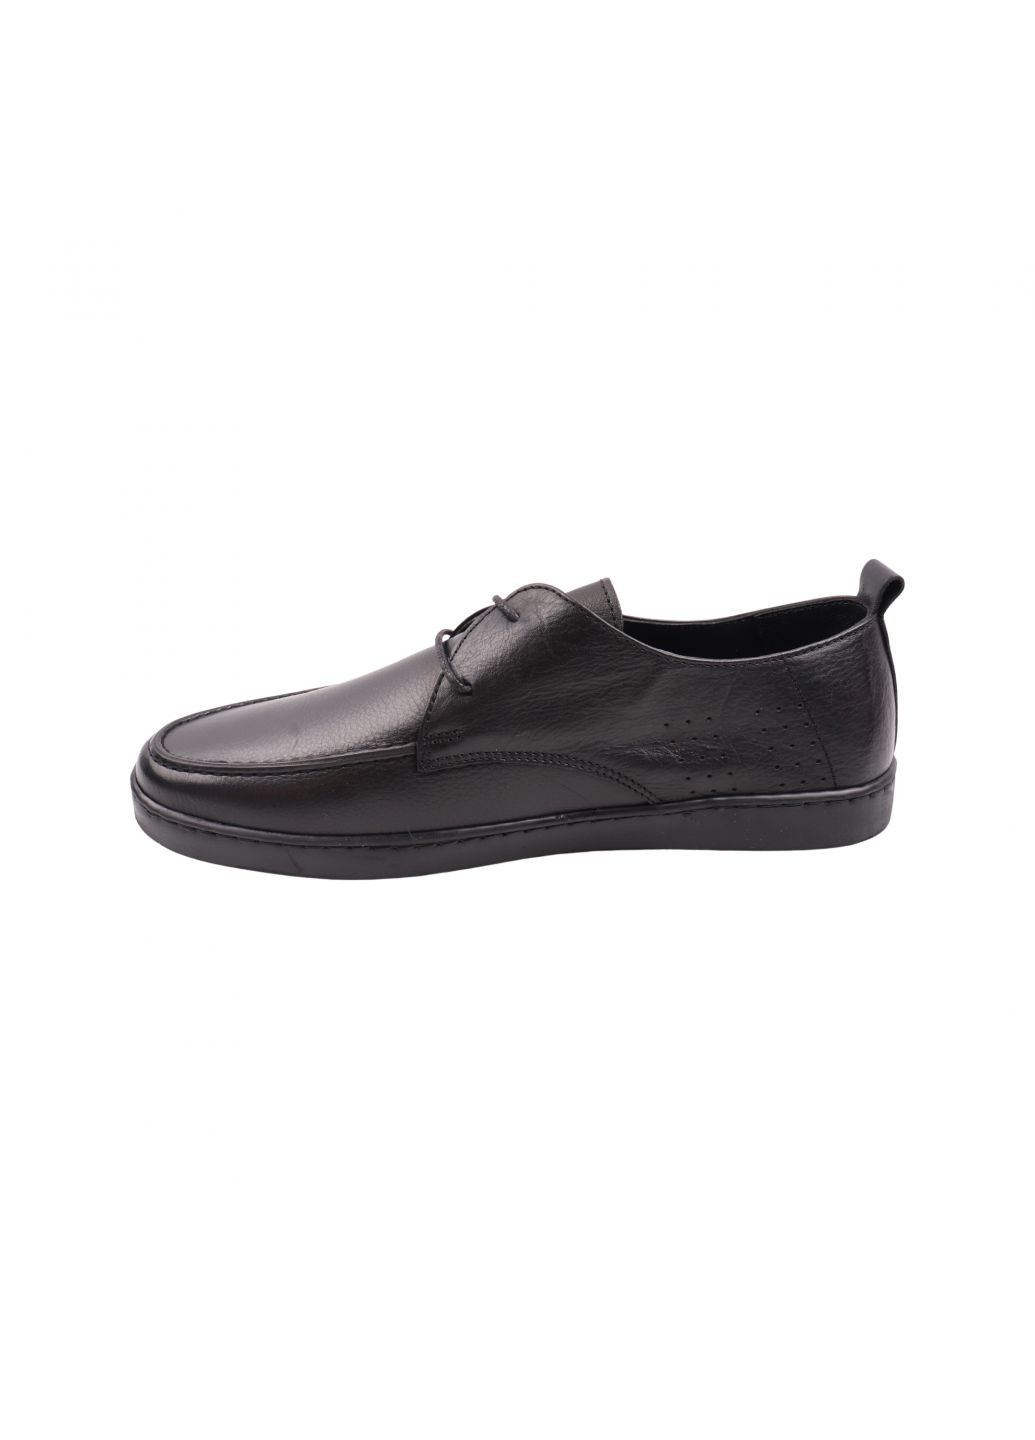 Черные туфли мужские черные натуральная кожа Copalo